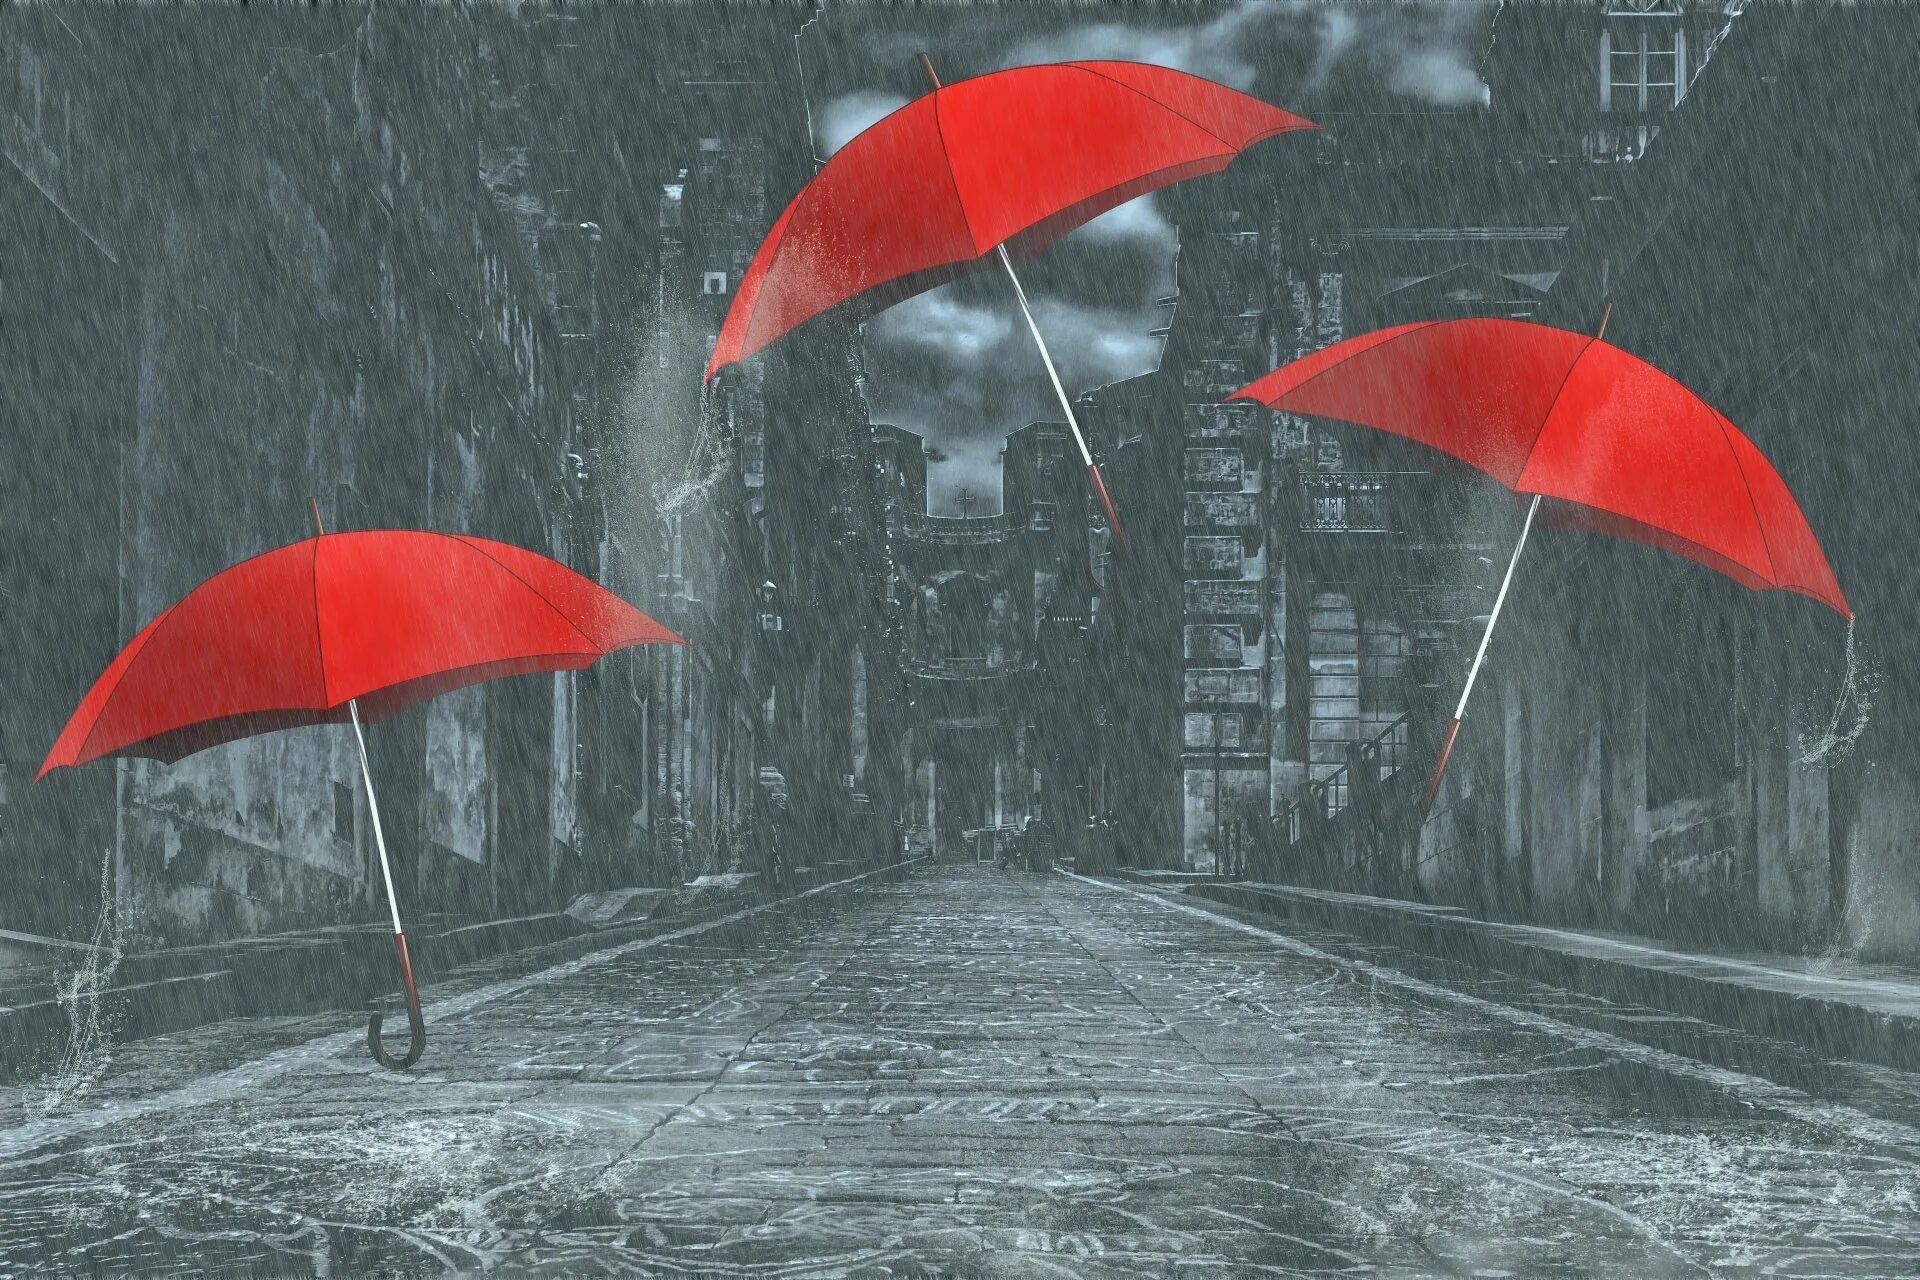 Тема дождливая погода. Зонтик под дождем. Дождливый день. Красный зонтик. Зонт под дождем.